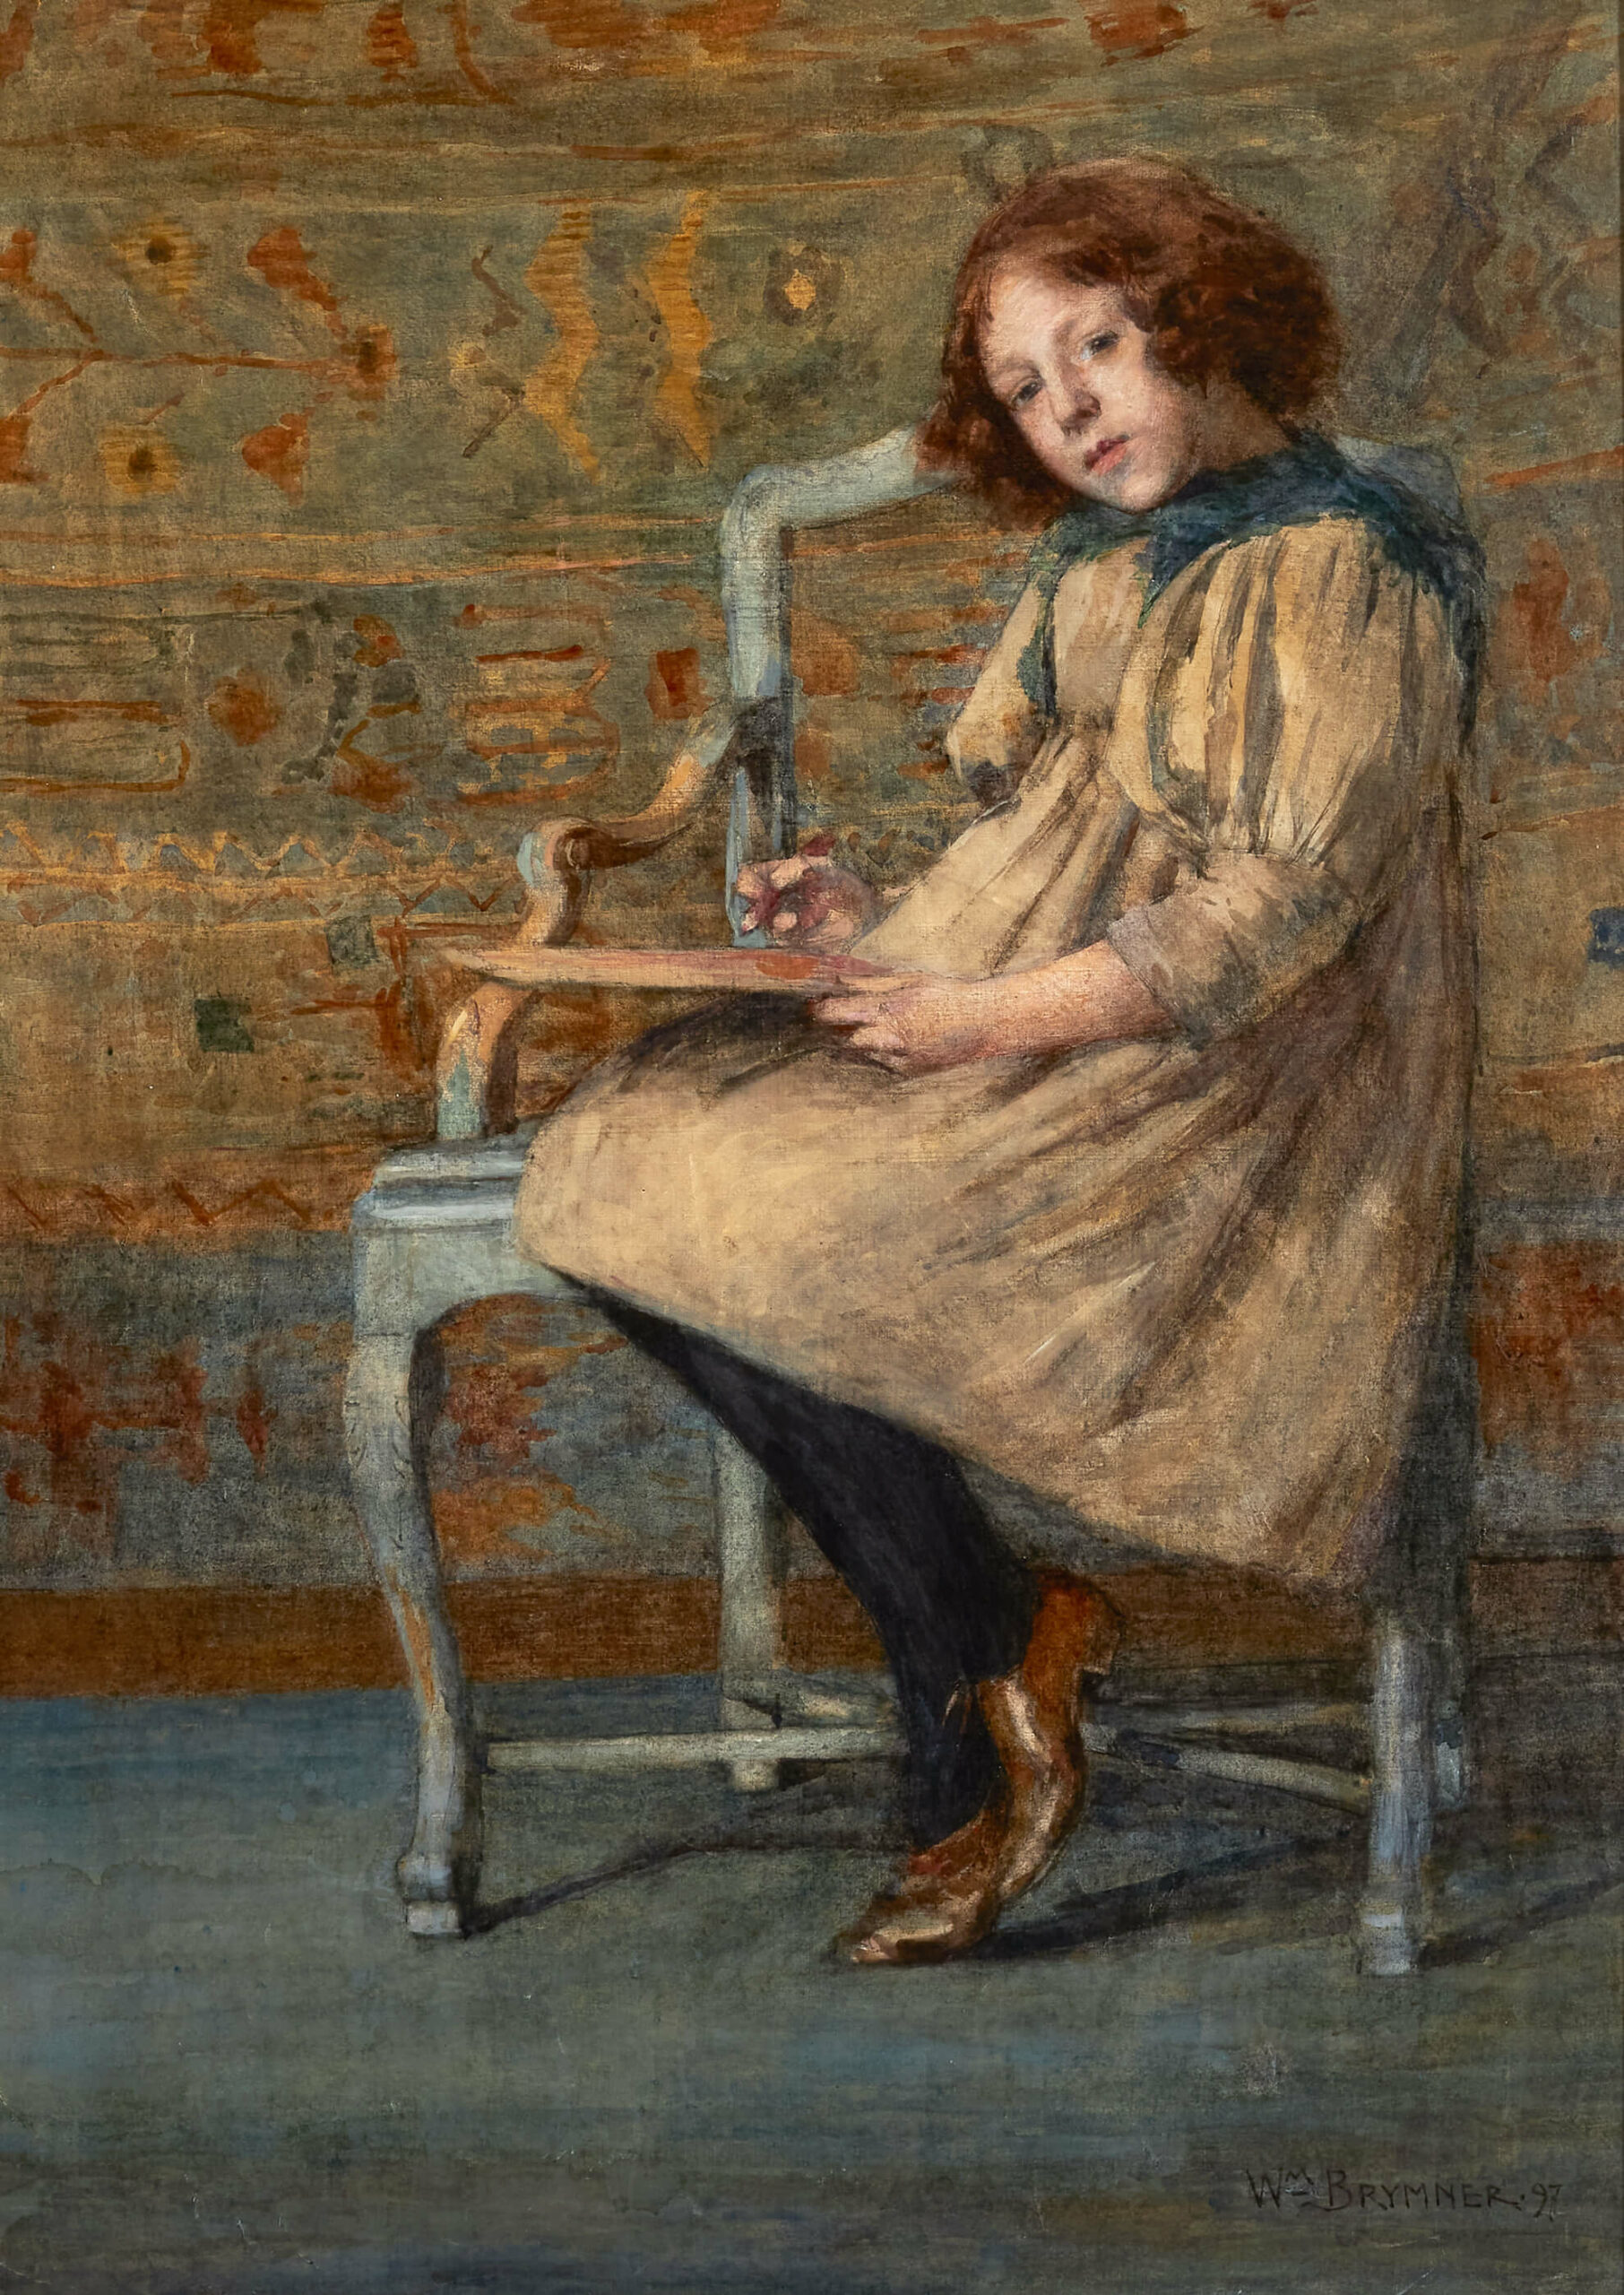 La jeune fille sombre, 1897